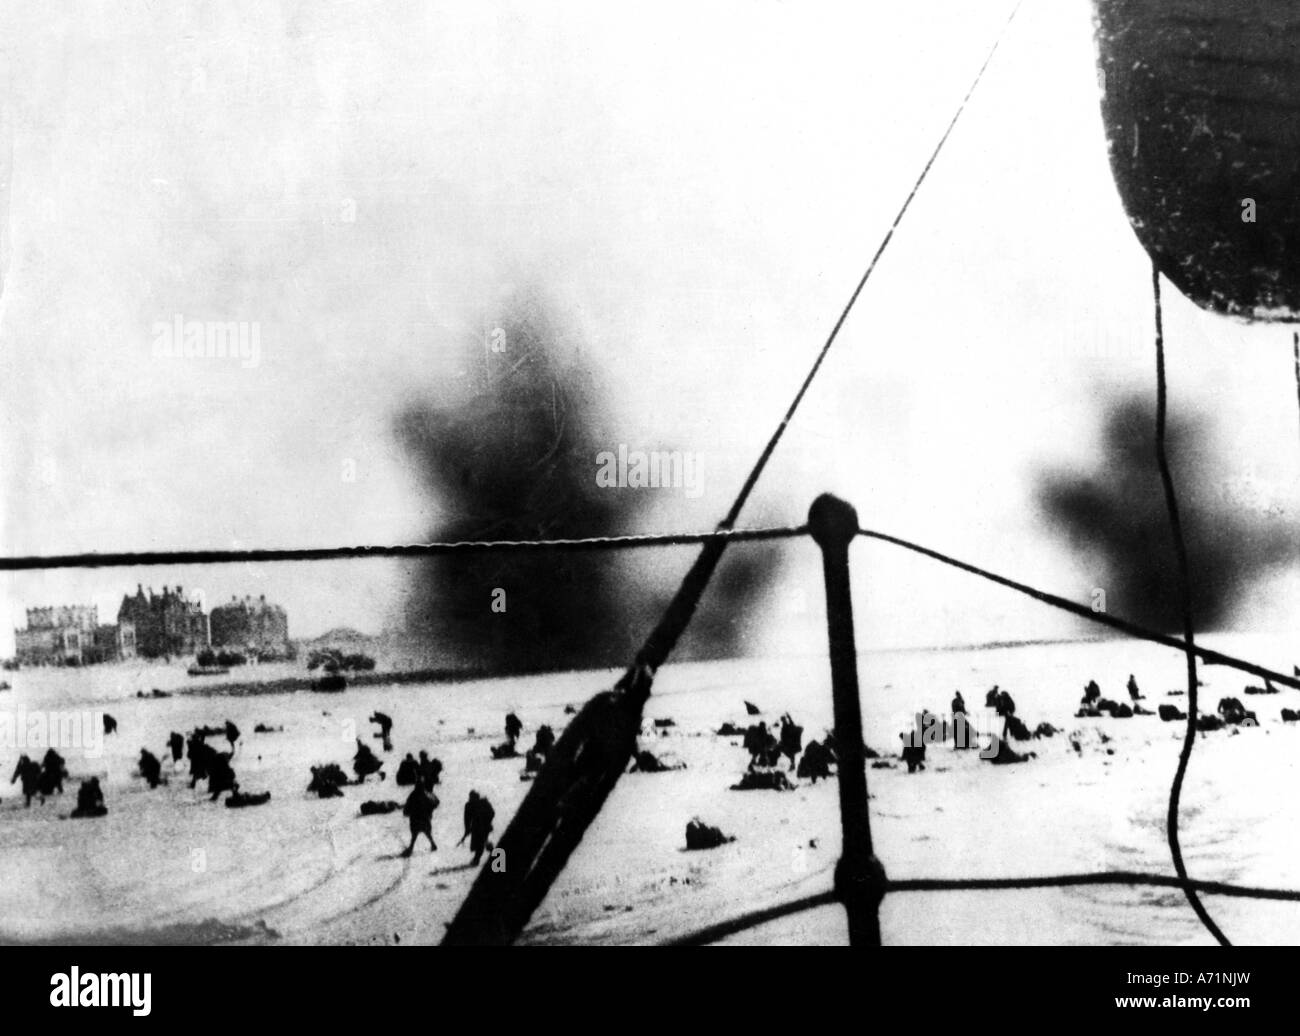 Eventi, Seconda guerra mondiale / seconda guerra mondiale, Francia, Dunkerque, evacuazione delle truppe alleate 26.5.1940 - 4.6.1940, soldati britannici in spiaggia sotto bombardamento, Foto Stock